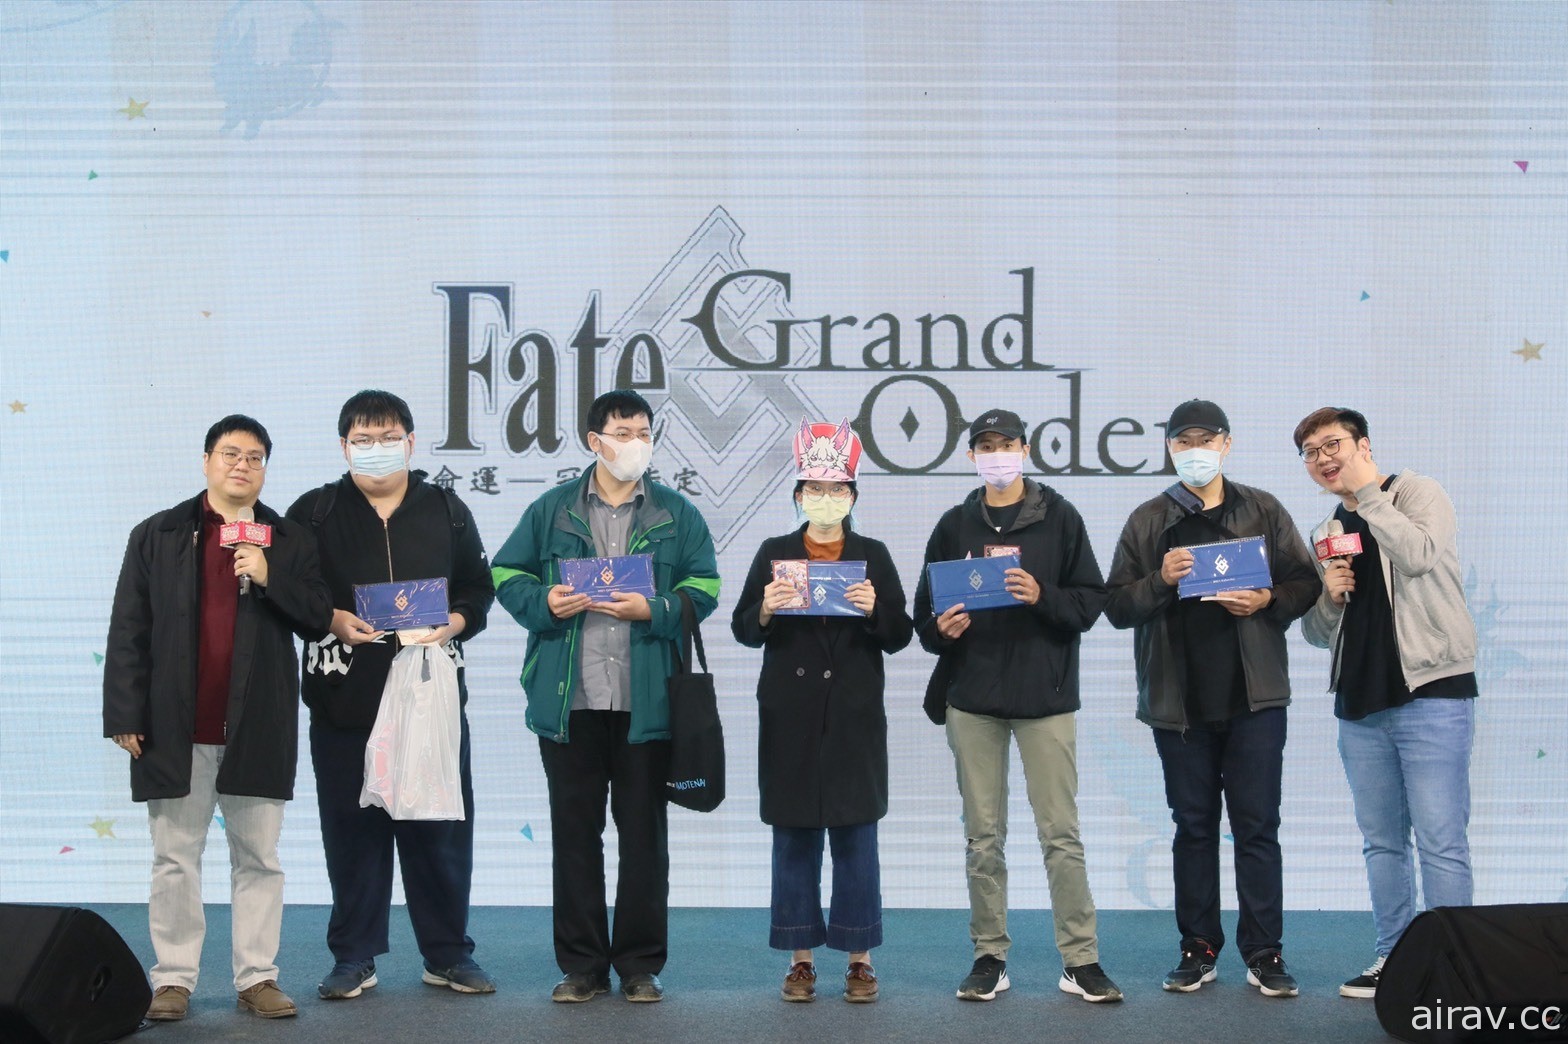 《Fate/Grand Order》繁中版「冬日祭 2020 大馬戲團」圓滿落幕 展區活動回顧全記錄